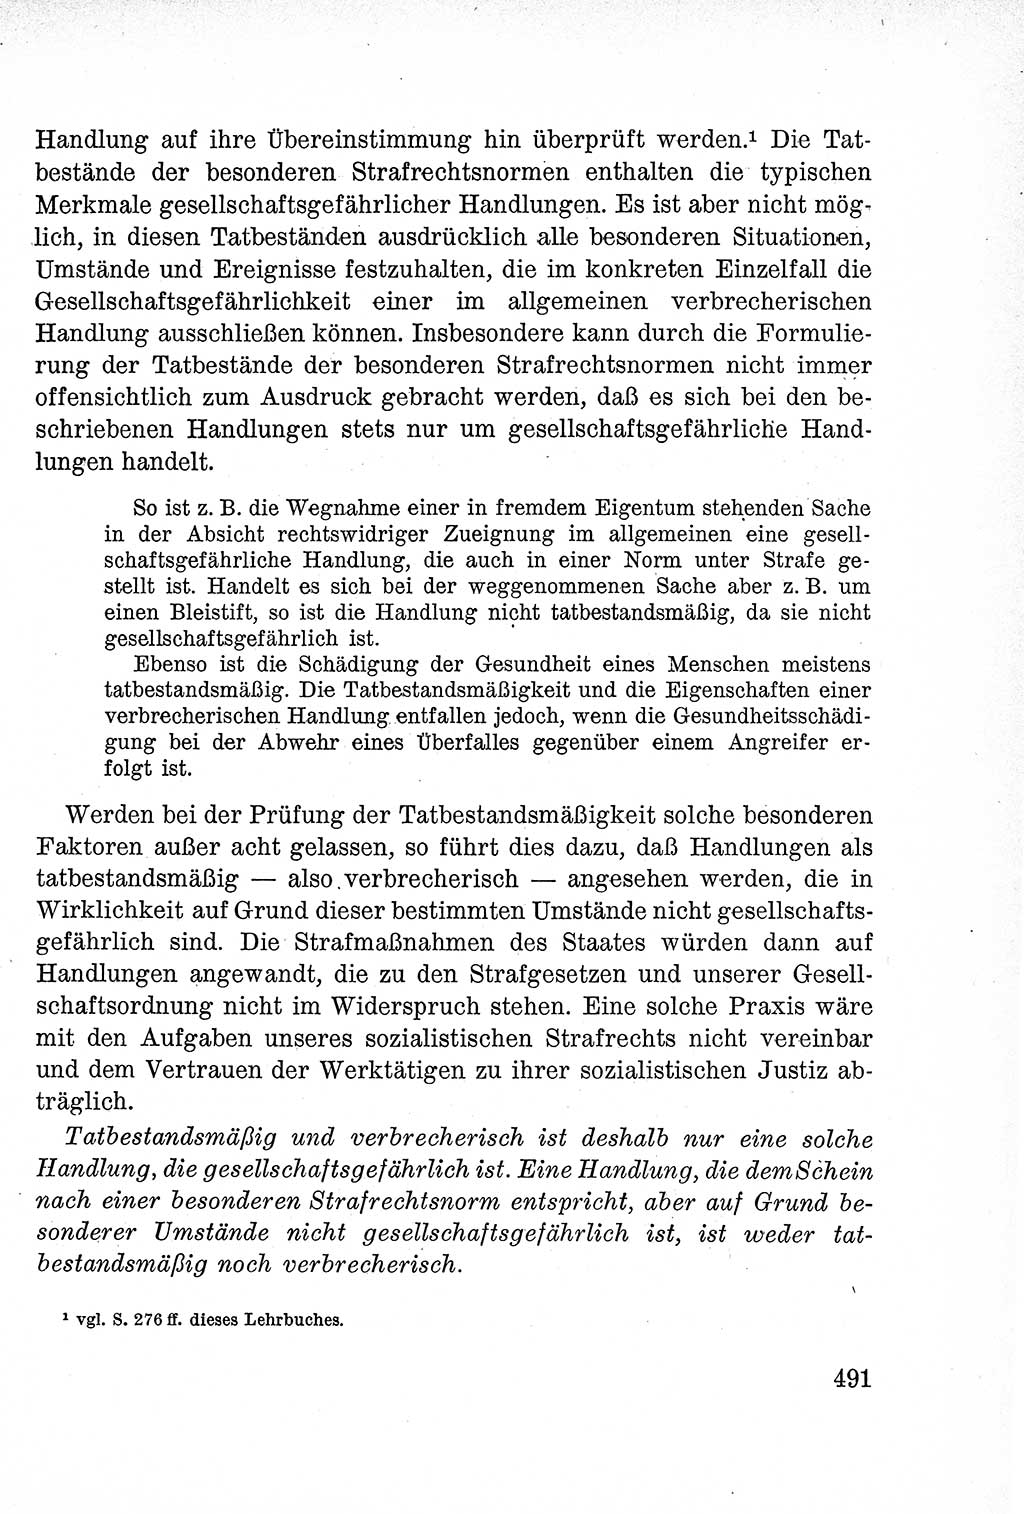 Lehrbuch des Strafrechts der Deutschen Demokratischen Republik (DDR), Allgemeiner Teil 1957, Seite 491 (Lb. Strafr. DDR AT 1957, S. 491)